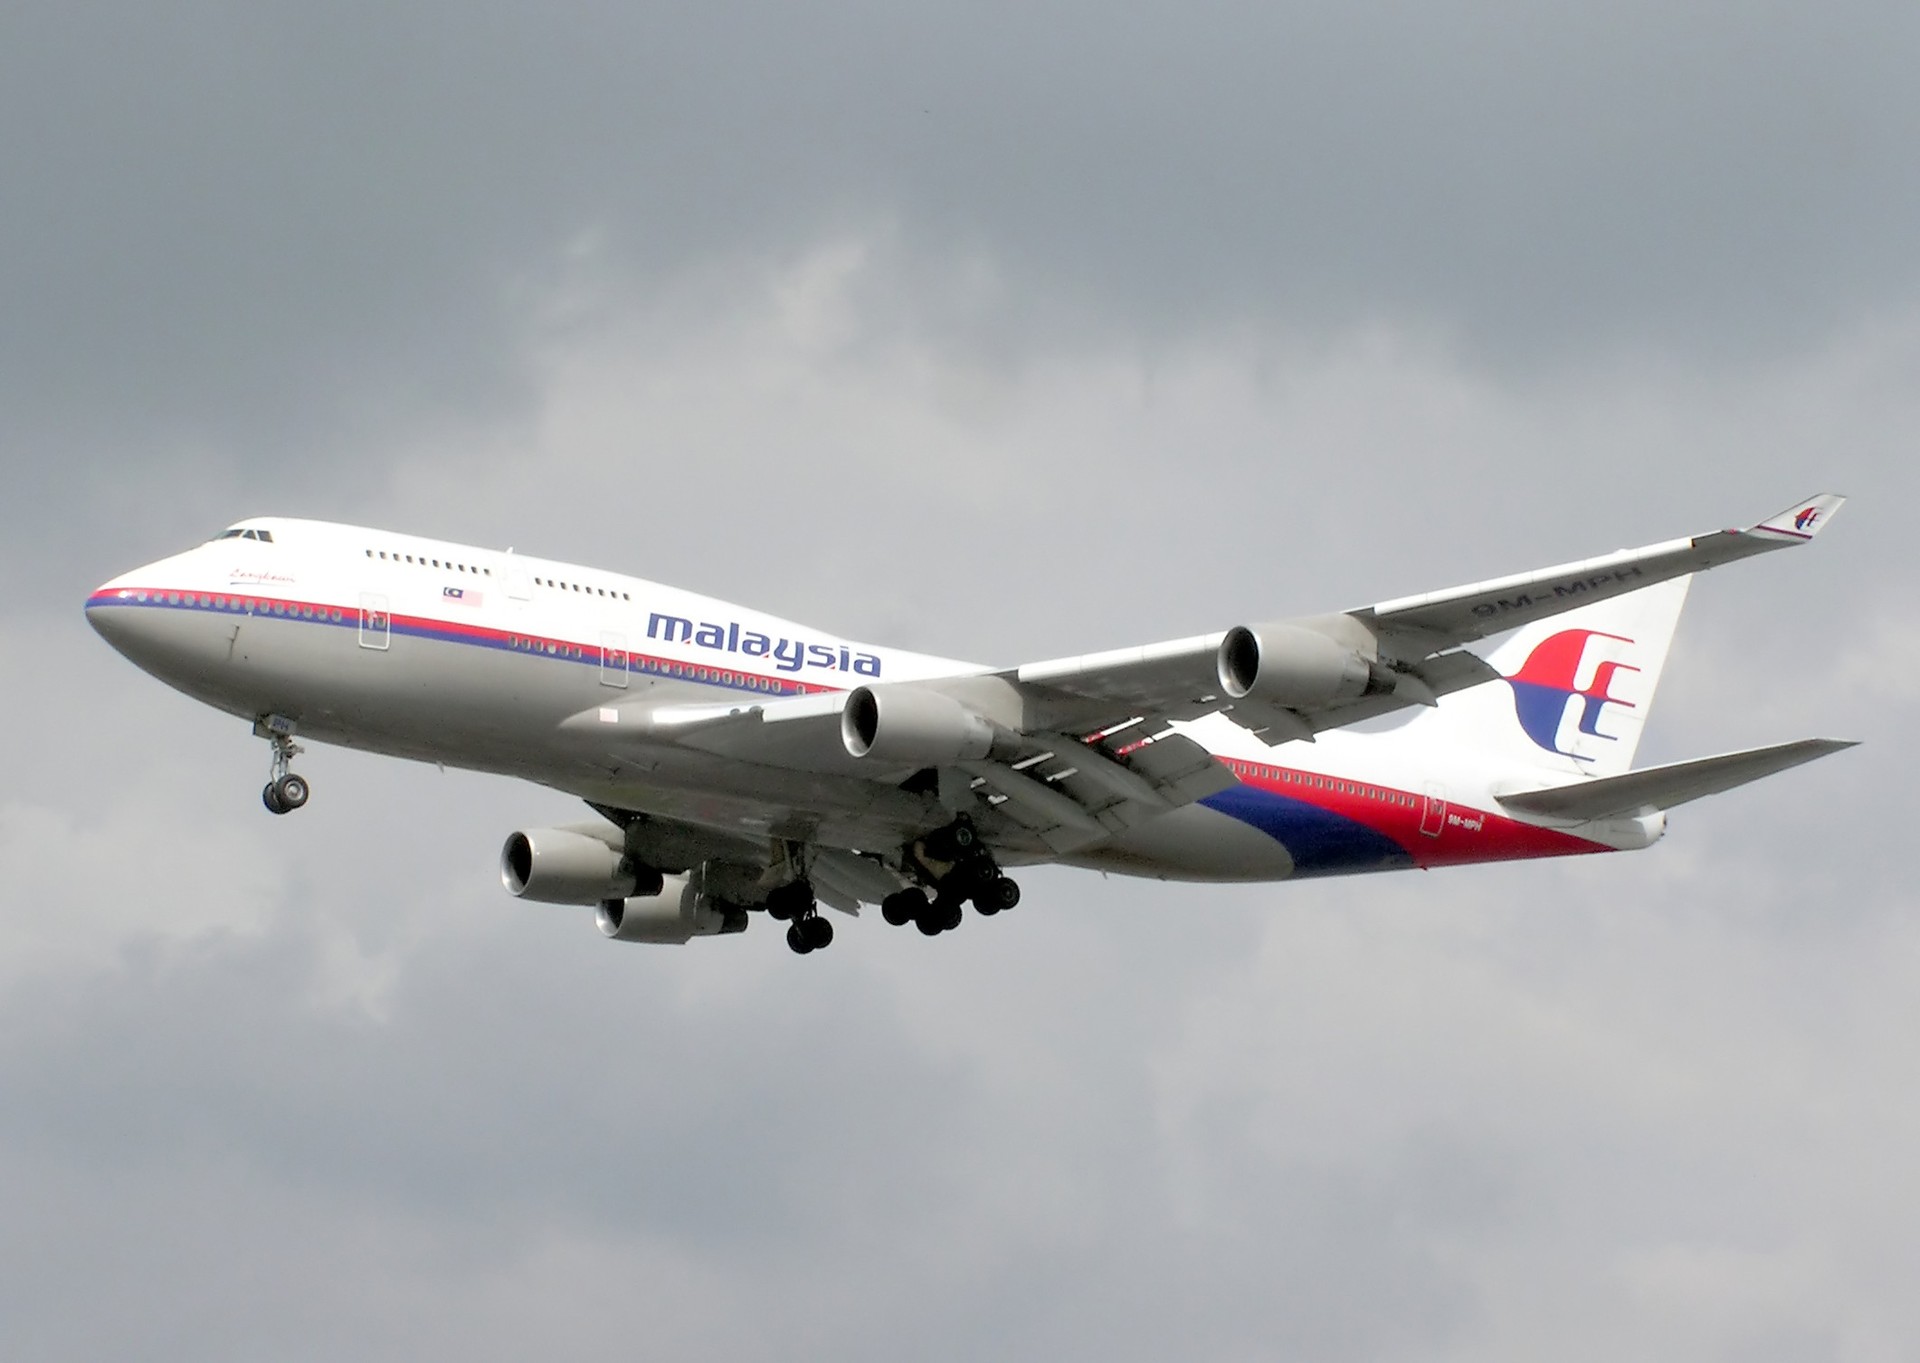 AVIÃO DA MALAYSIA AIRLINES DESAPARECEU COM 239 A BORDO (Foto: PEDRO MOURA PINHEIRO/FLICKR/CREATIVE COMMONS)